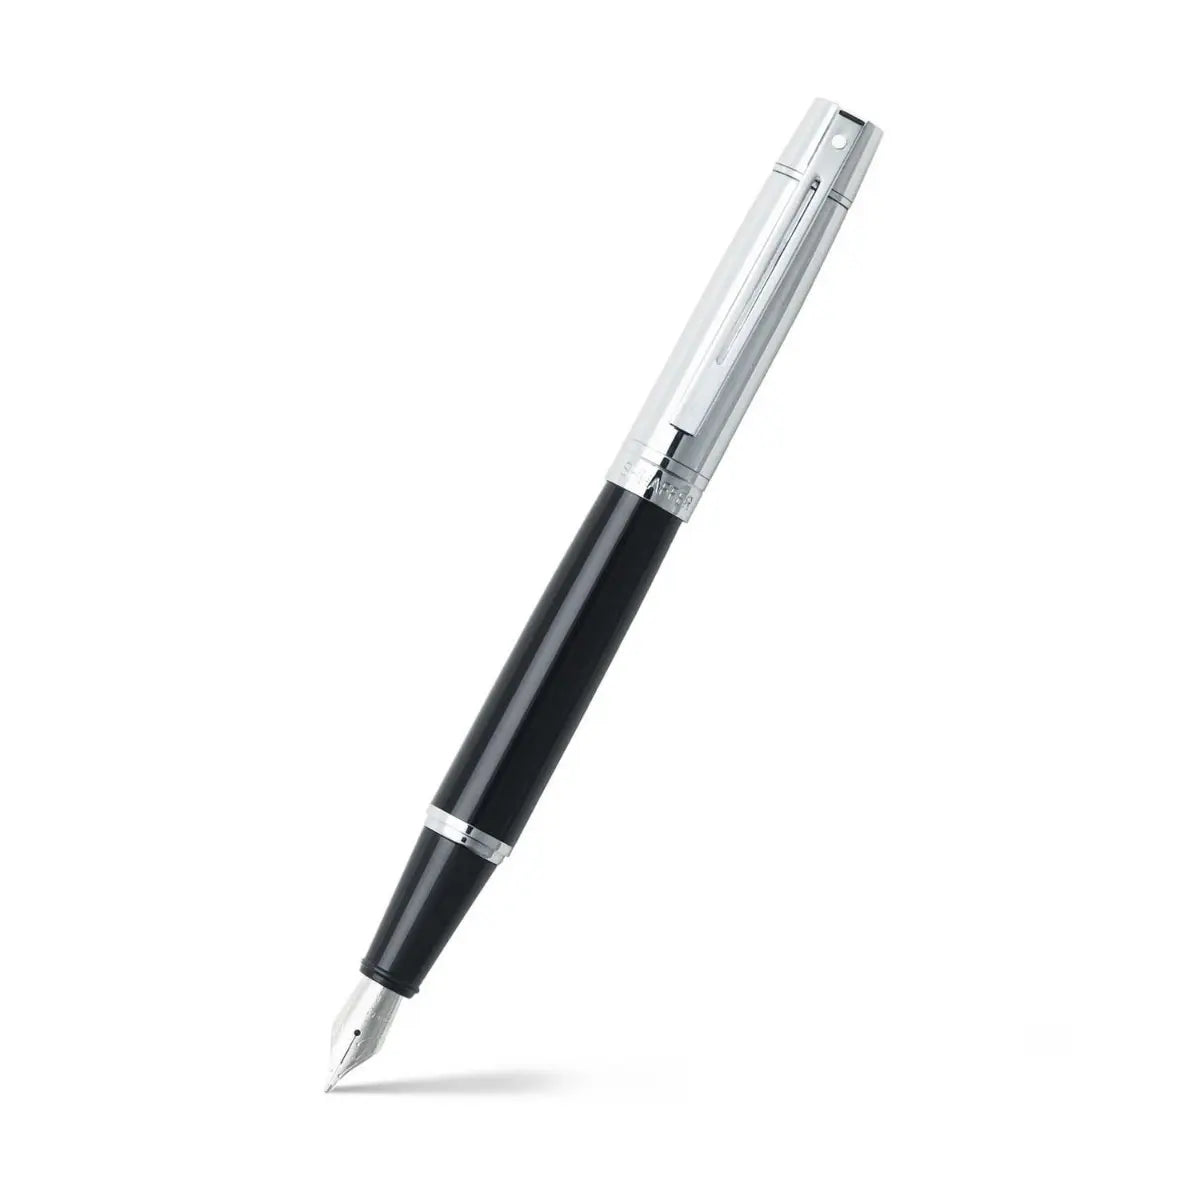 Sheaffer® Gift Set ft. Glossy Black S300 9314 with Chrome Trim as Set of 2 pens -  Ballpoint Pen & Fountain pen (M)